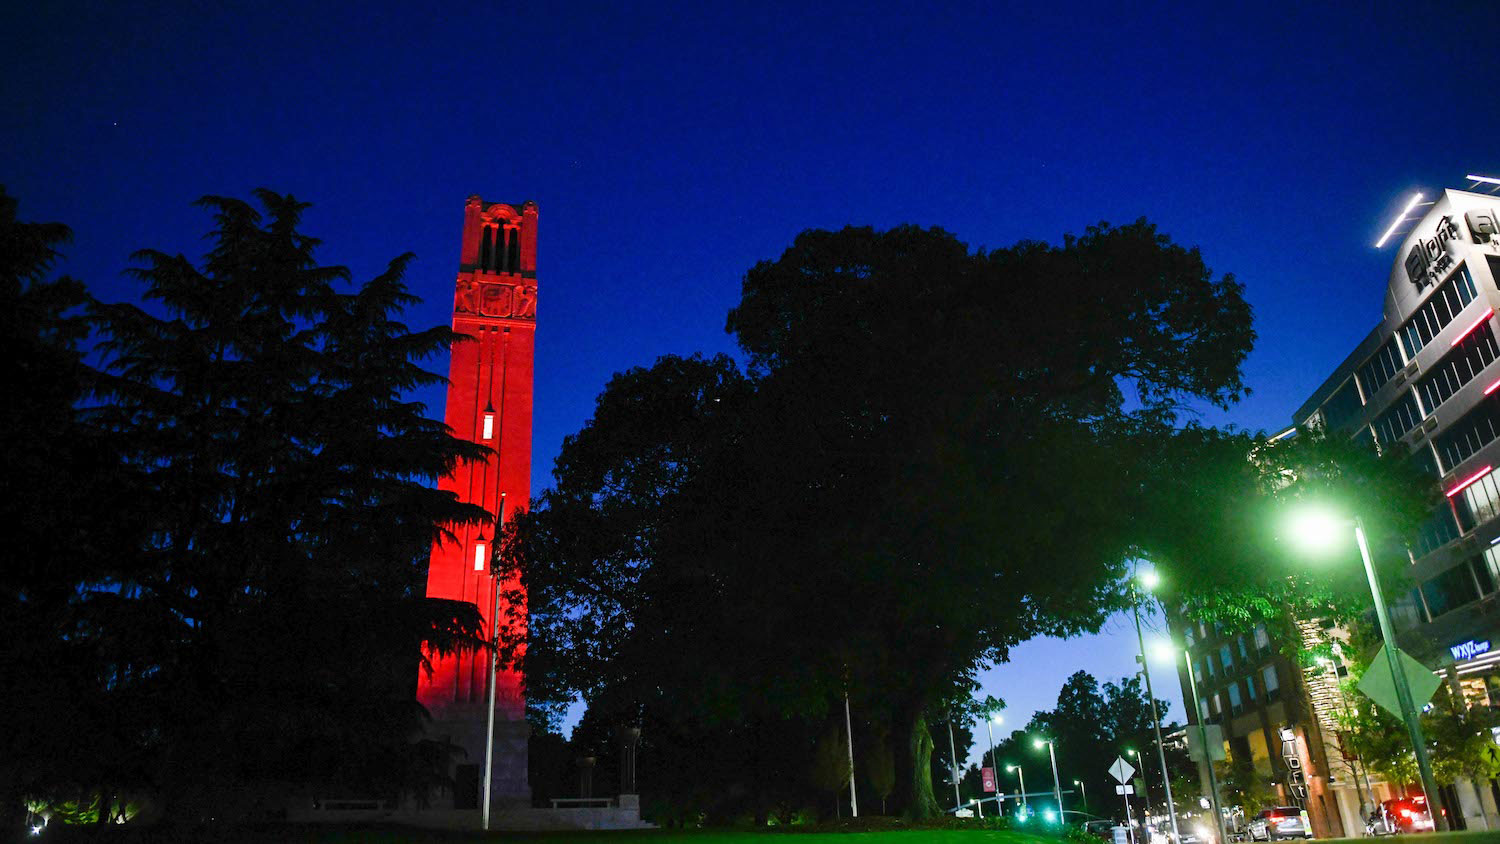 The Memorial Belltower at night